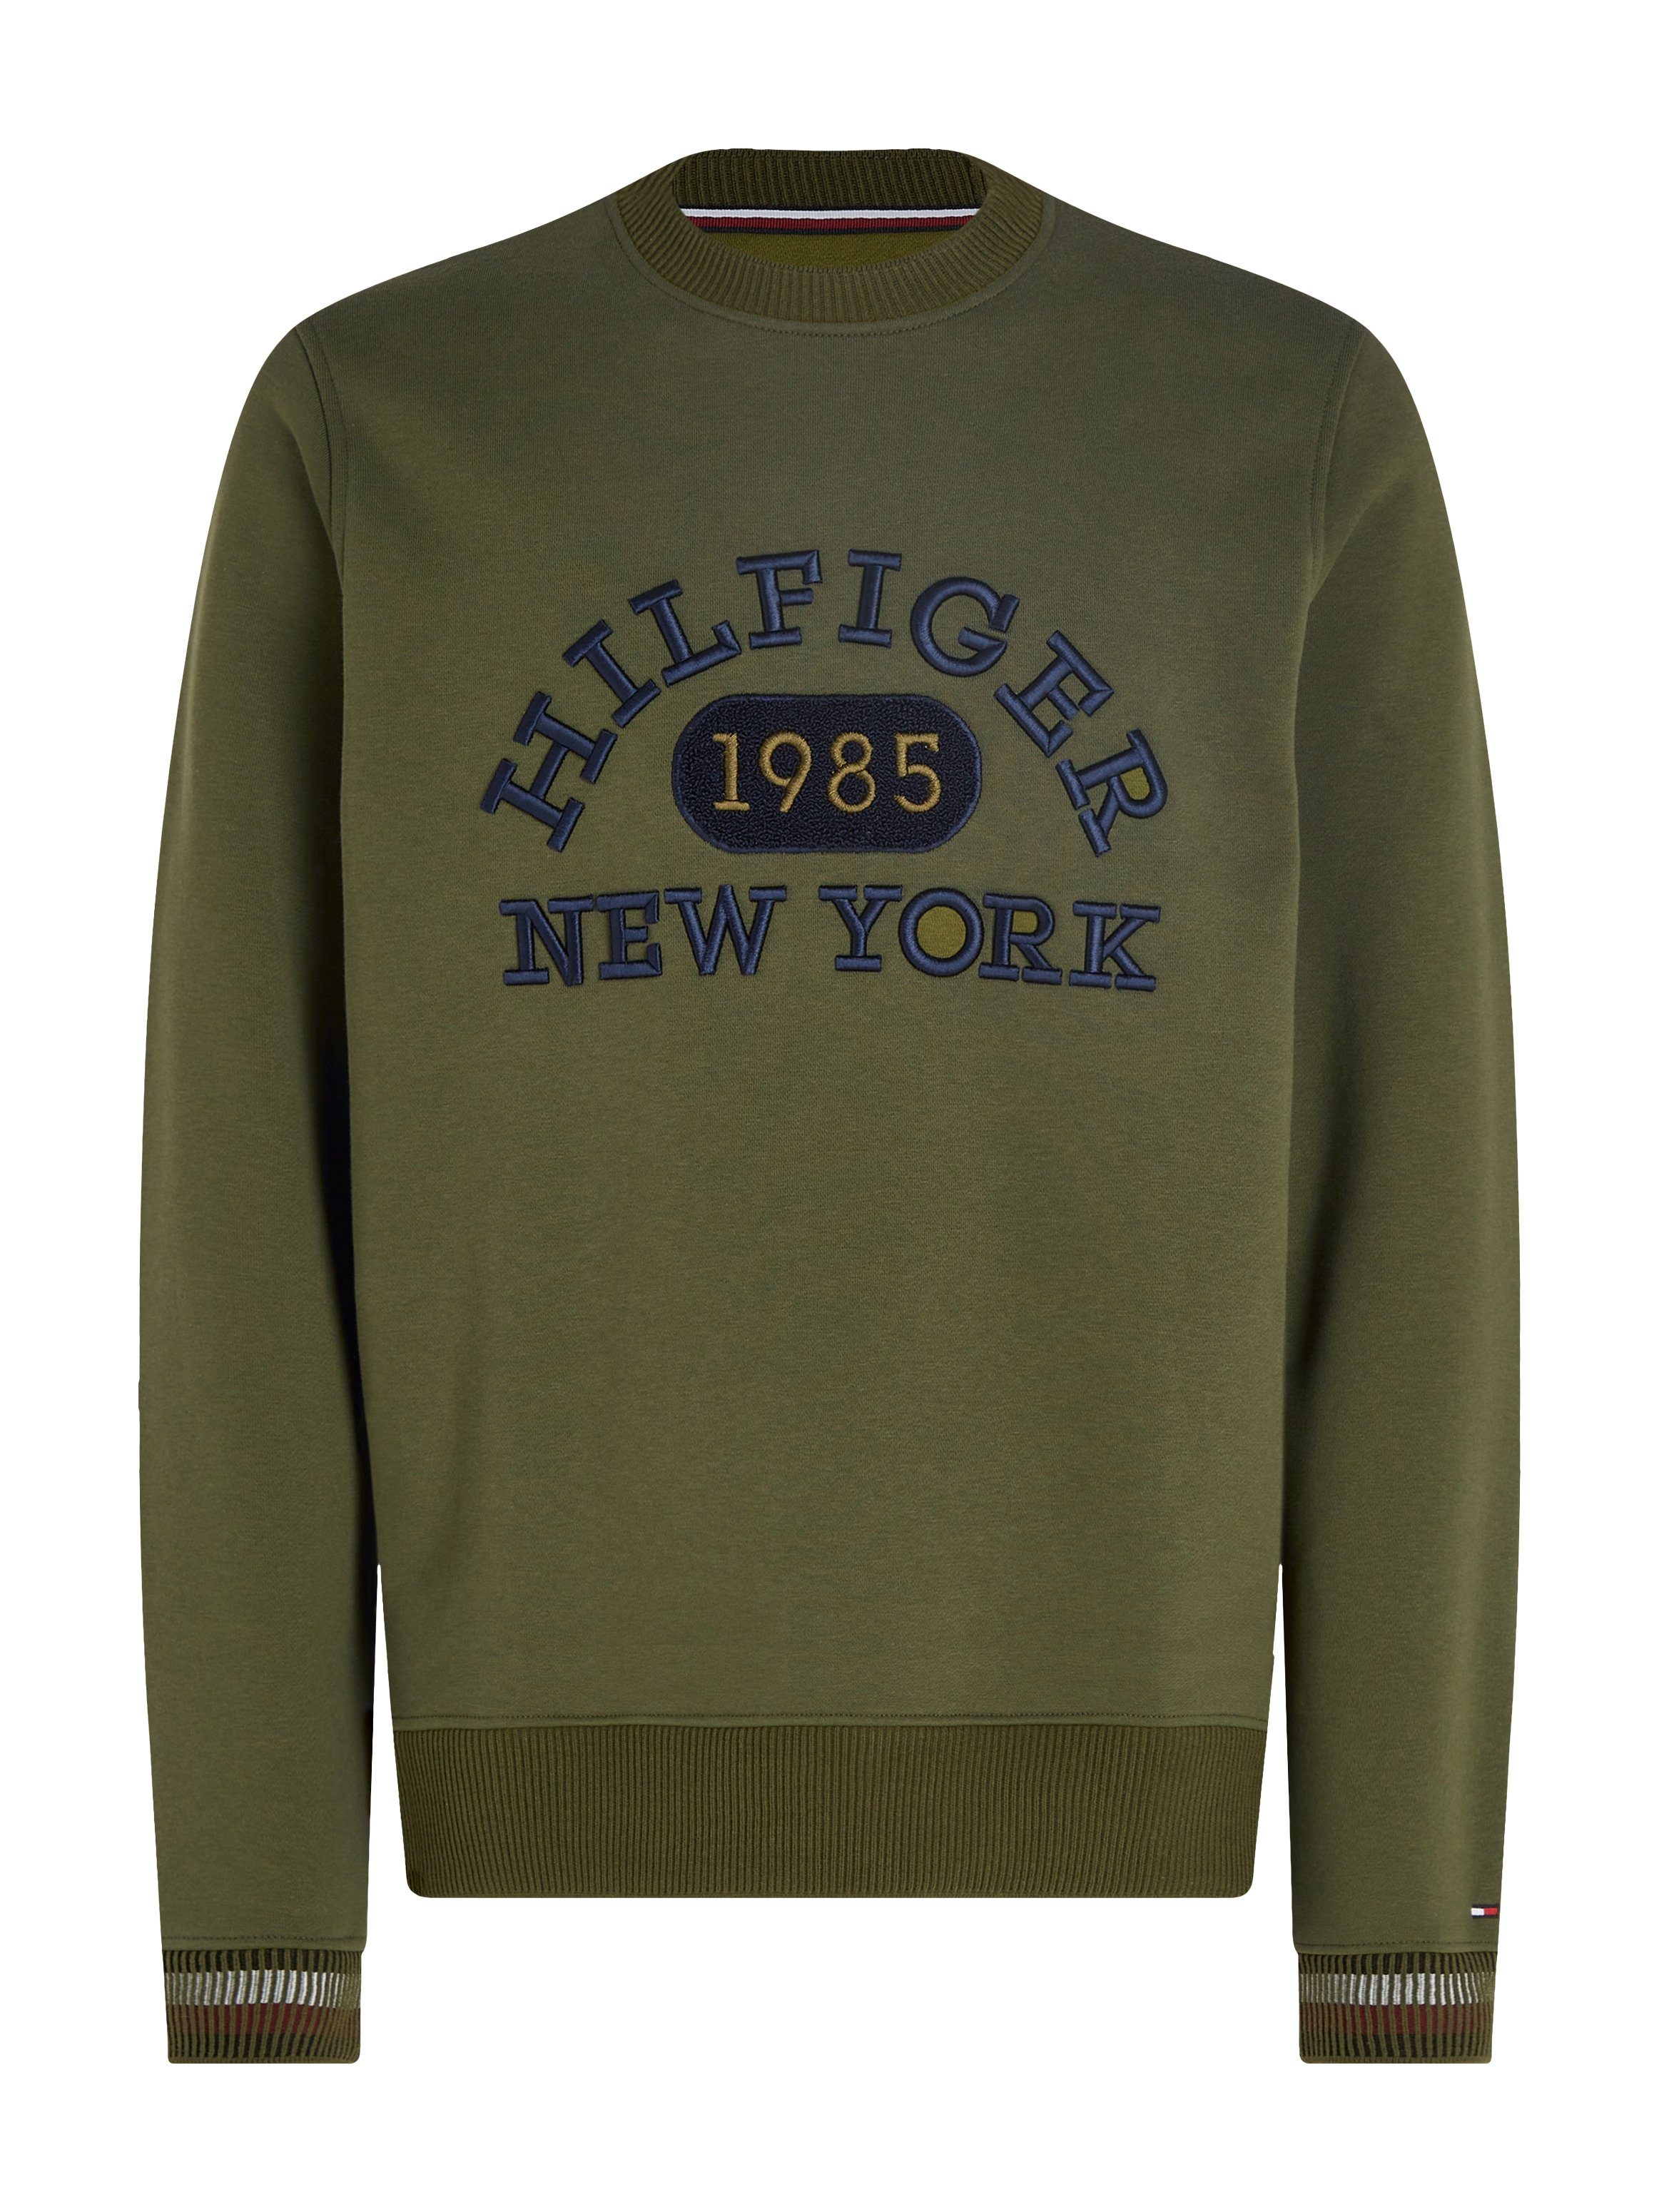 New 1985 Sweatshirt Hilfiger York putting green Tommy Hilfiger